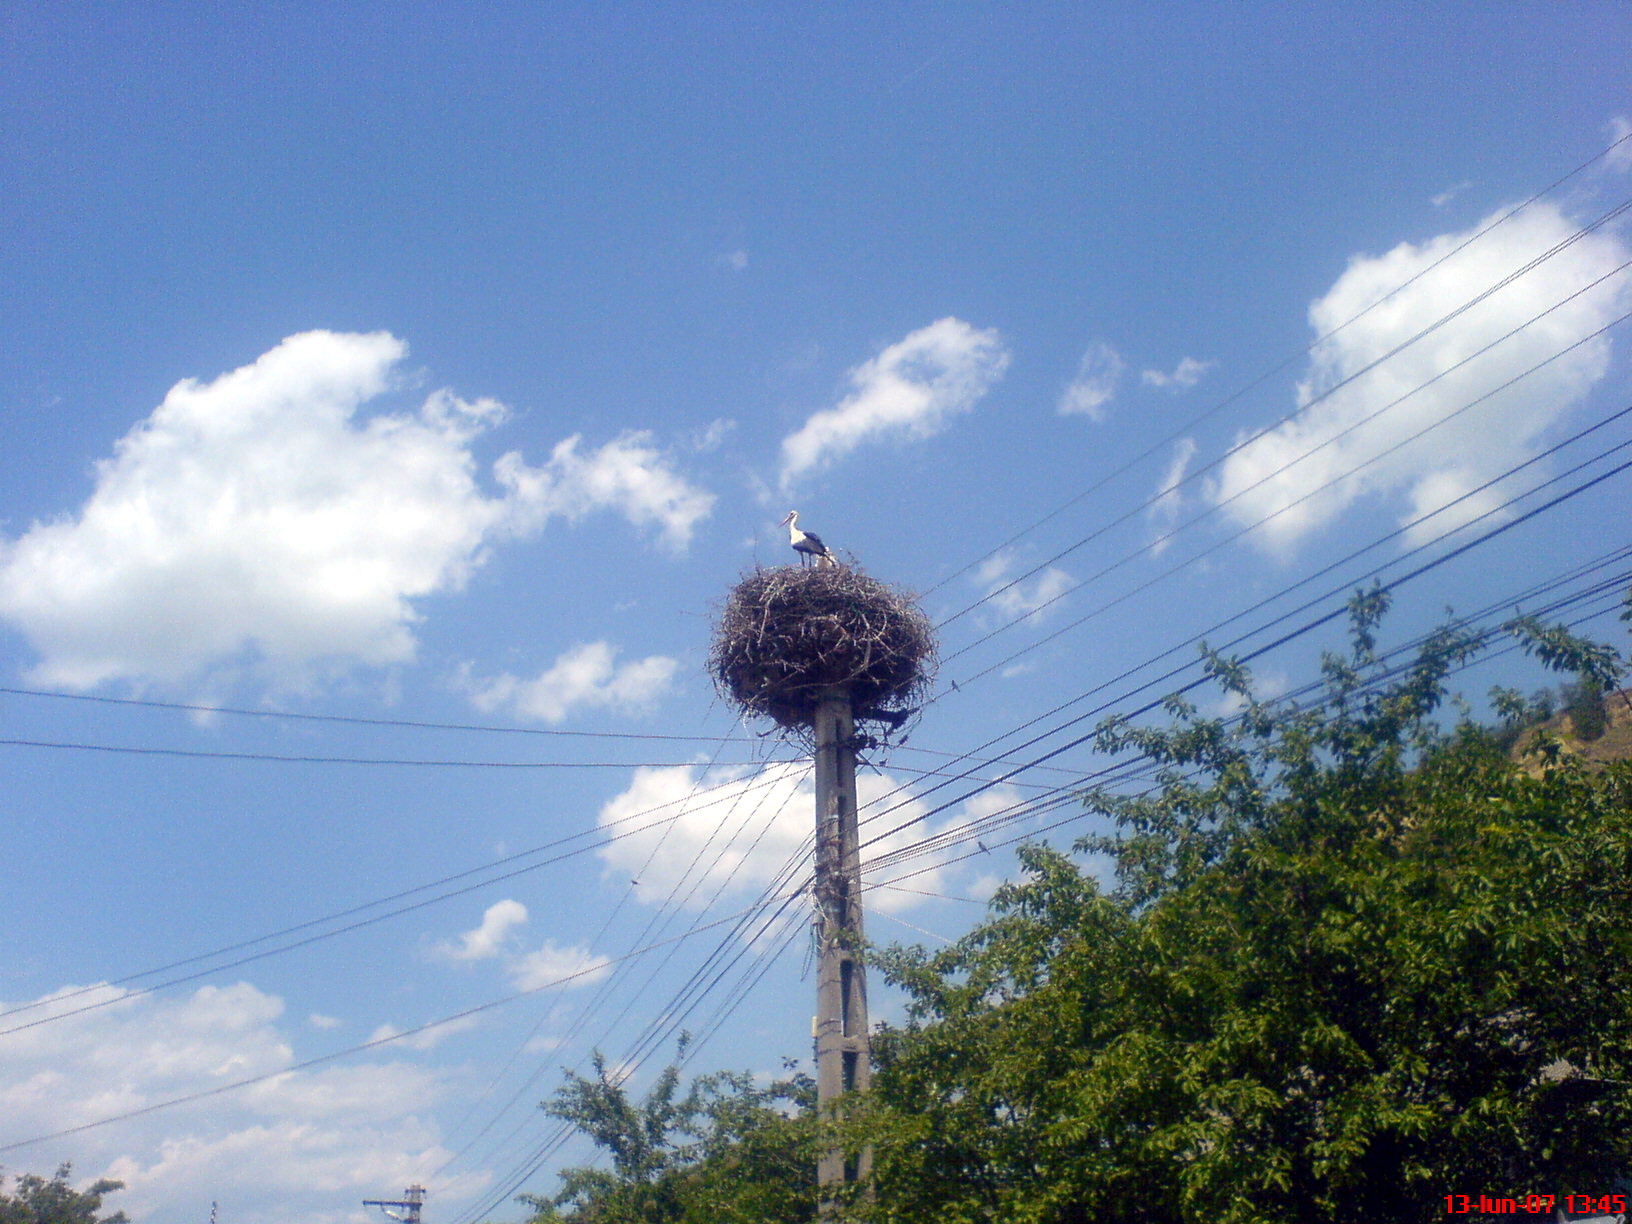 A stork’s nest